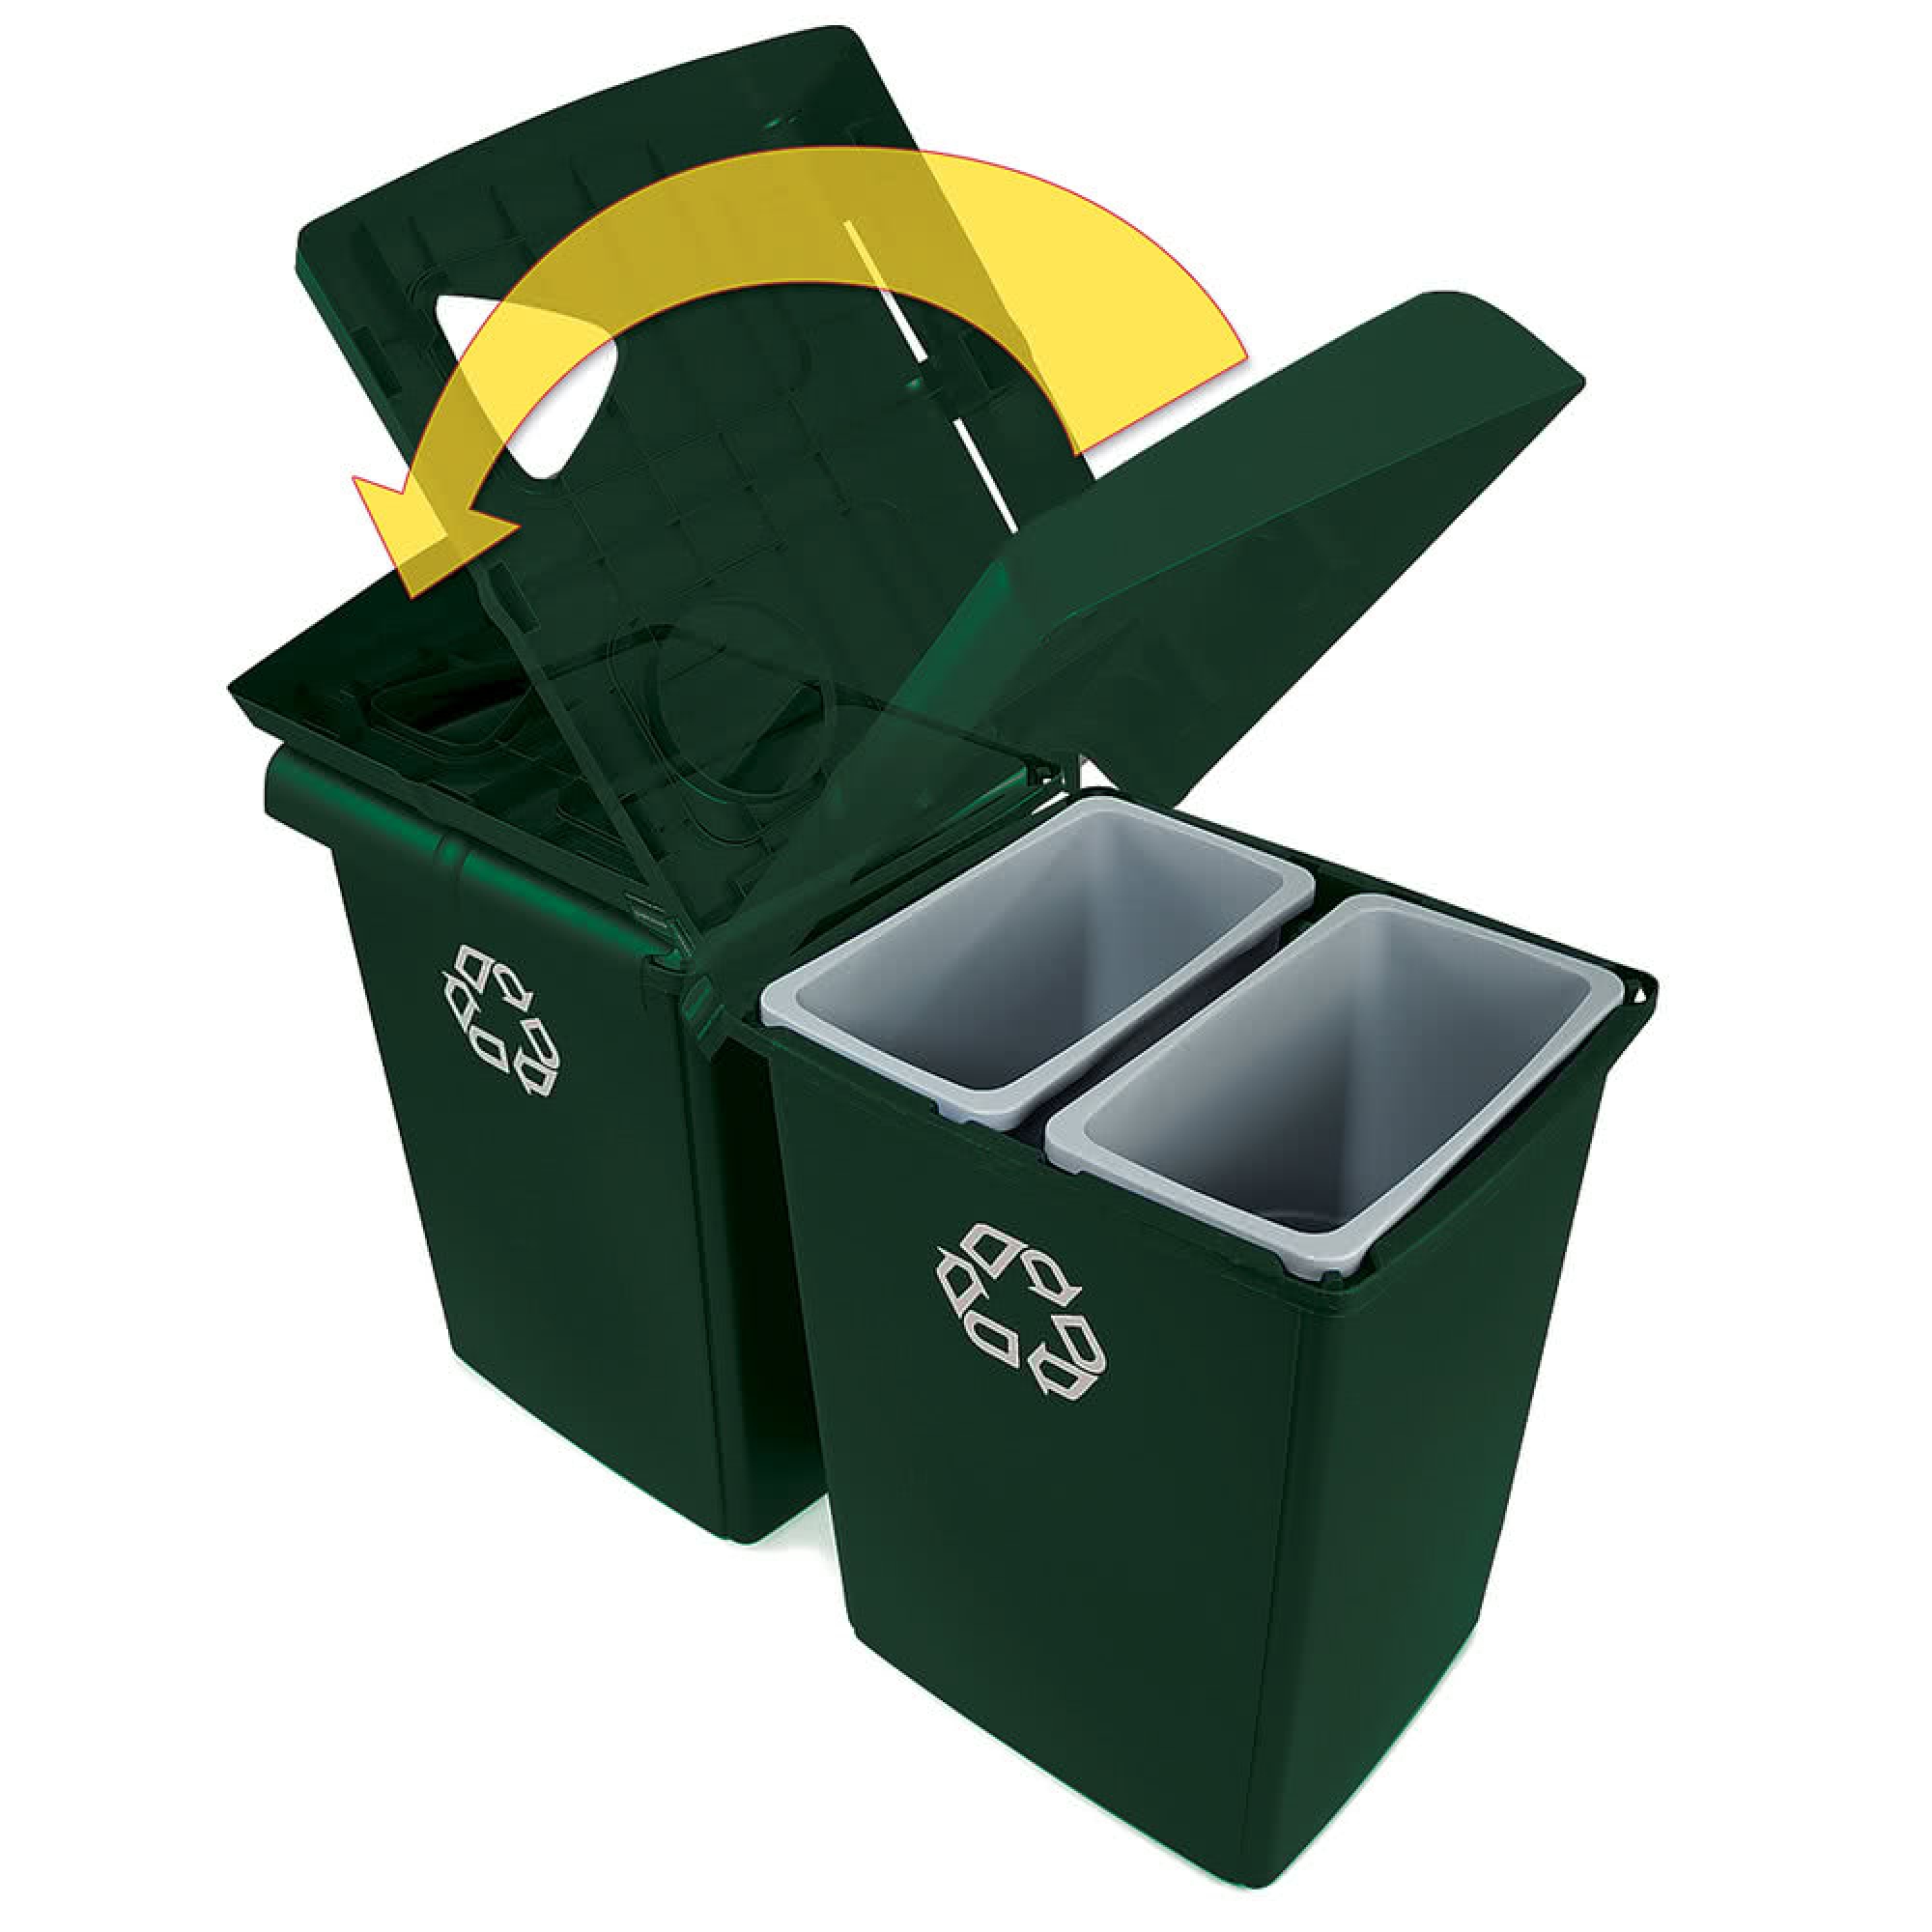 Rubbermaid 1792373 estación de reciclaje Glutton con 4 corrientes de desecho y capacidad para 92 galones, color verde